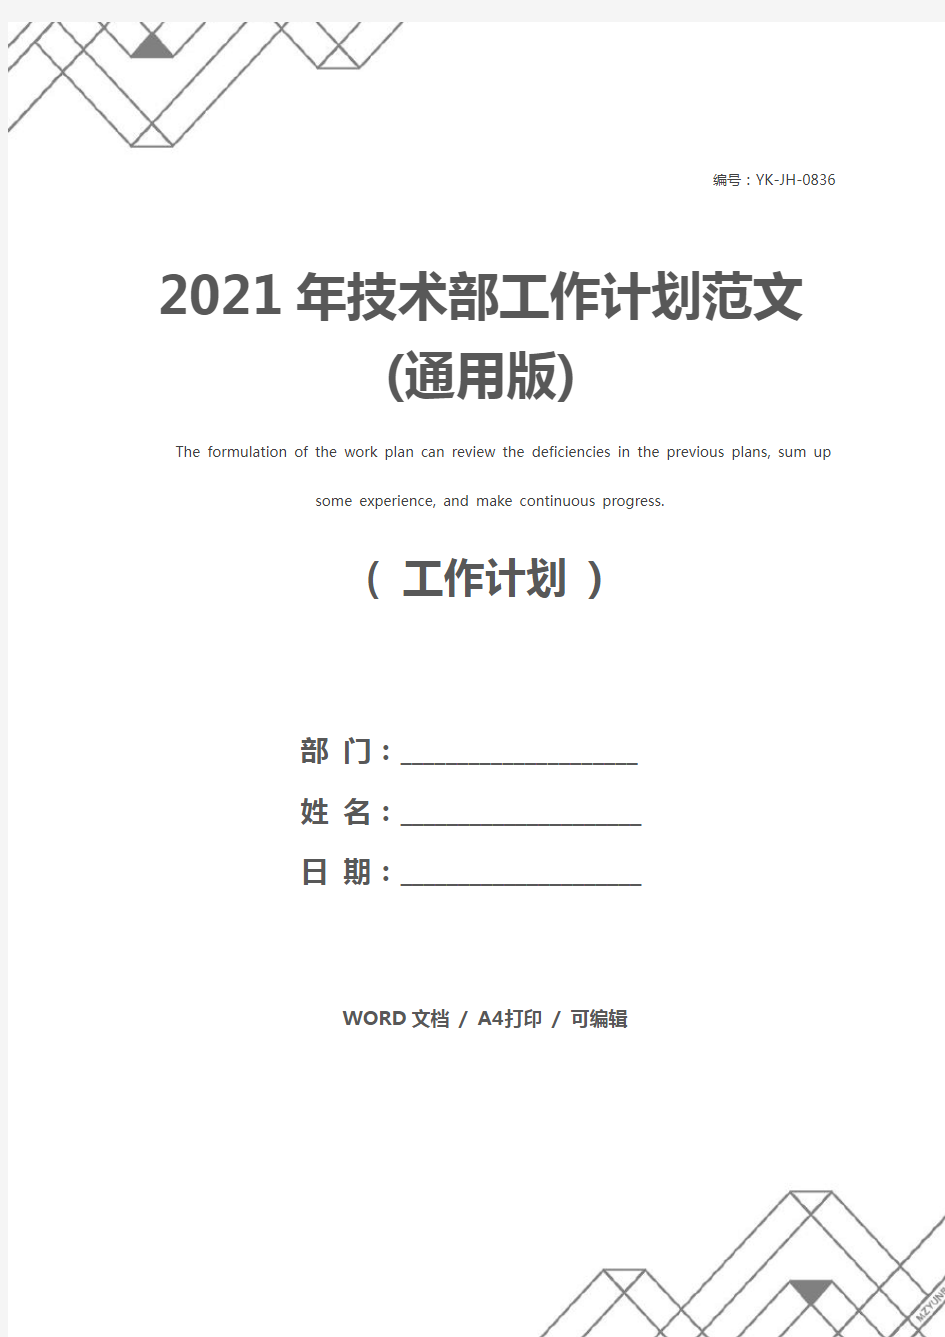 2021年技术部工作计划范文(通用版)